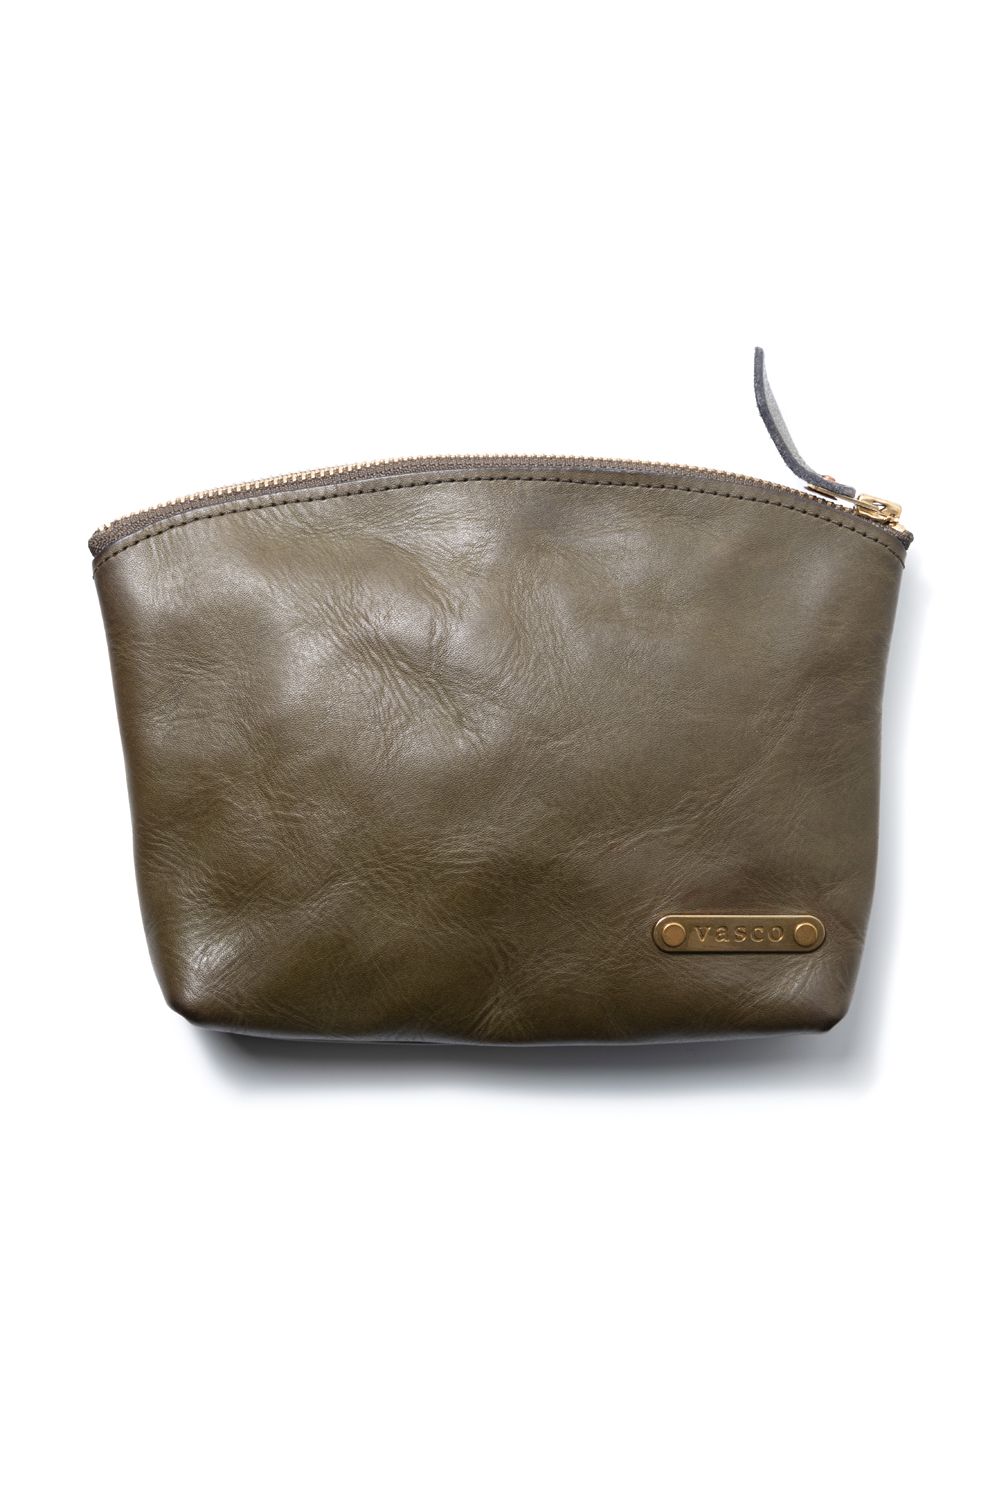 vasco (ヴァスコ) 革鞄・革小物 | 正規通販 BONITA